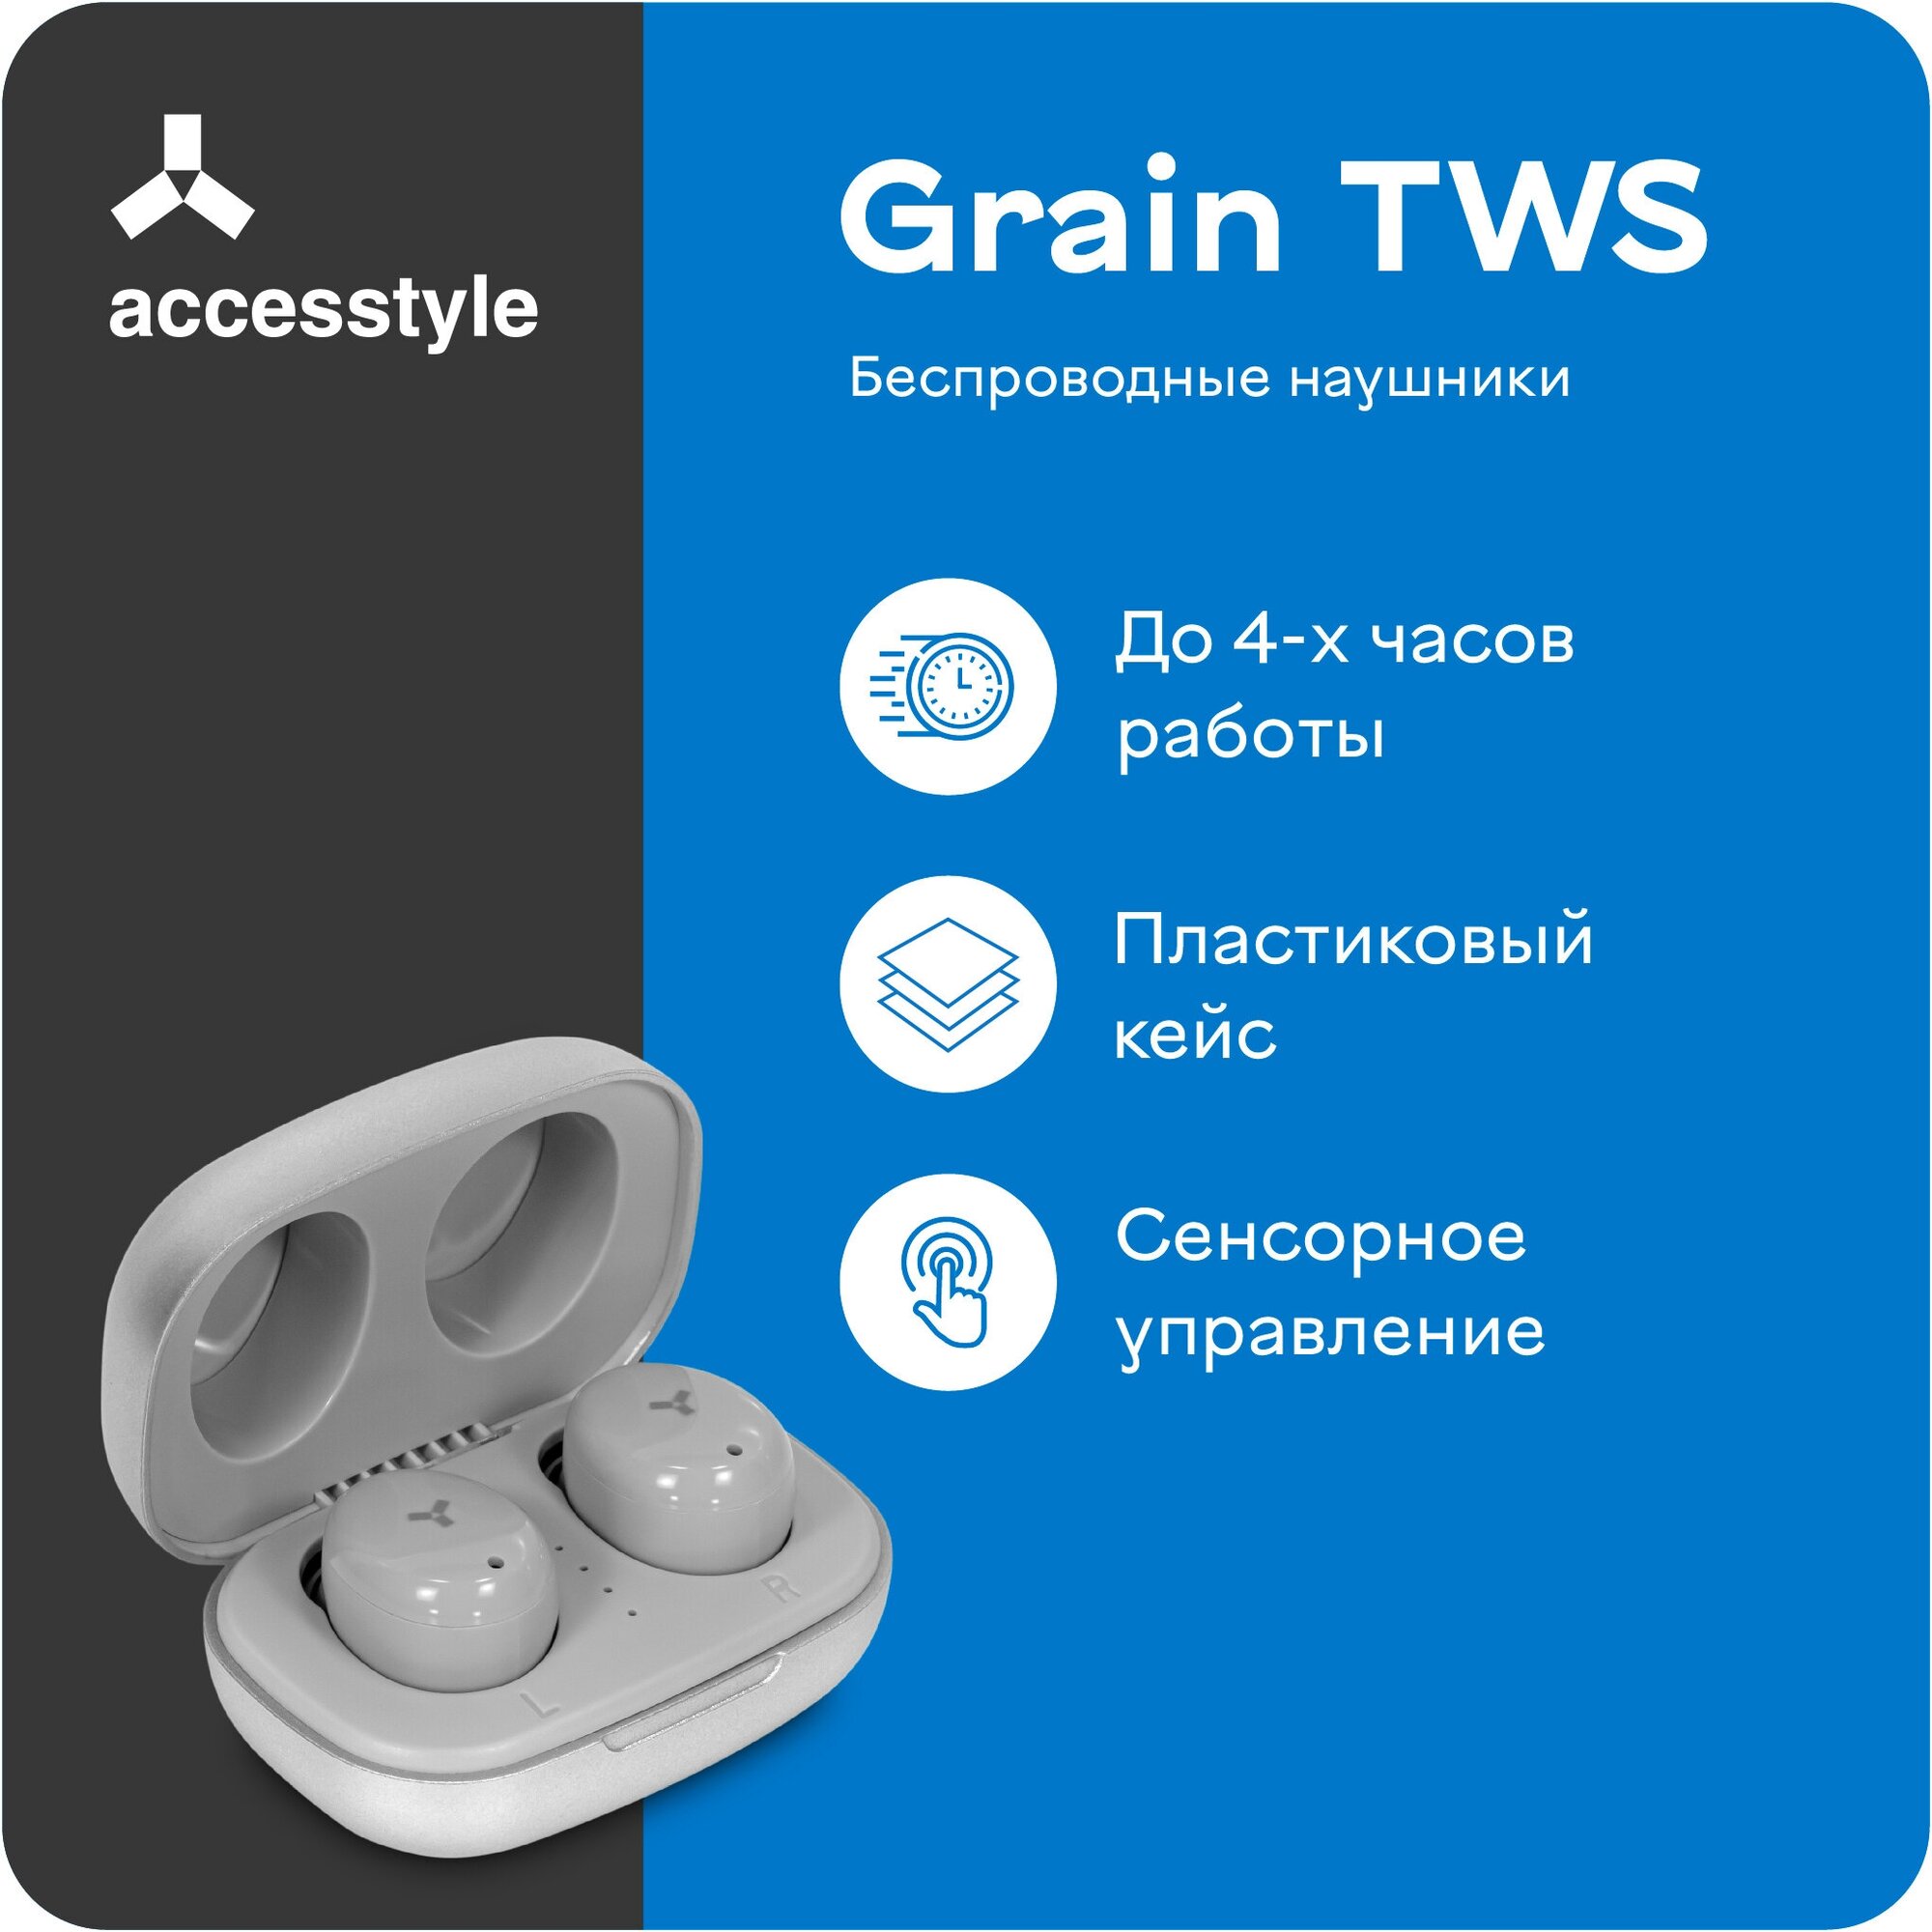 Беспроводные наушники Accesstyle Grain TWS серебристые